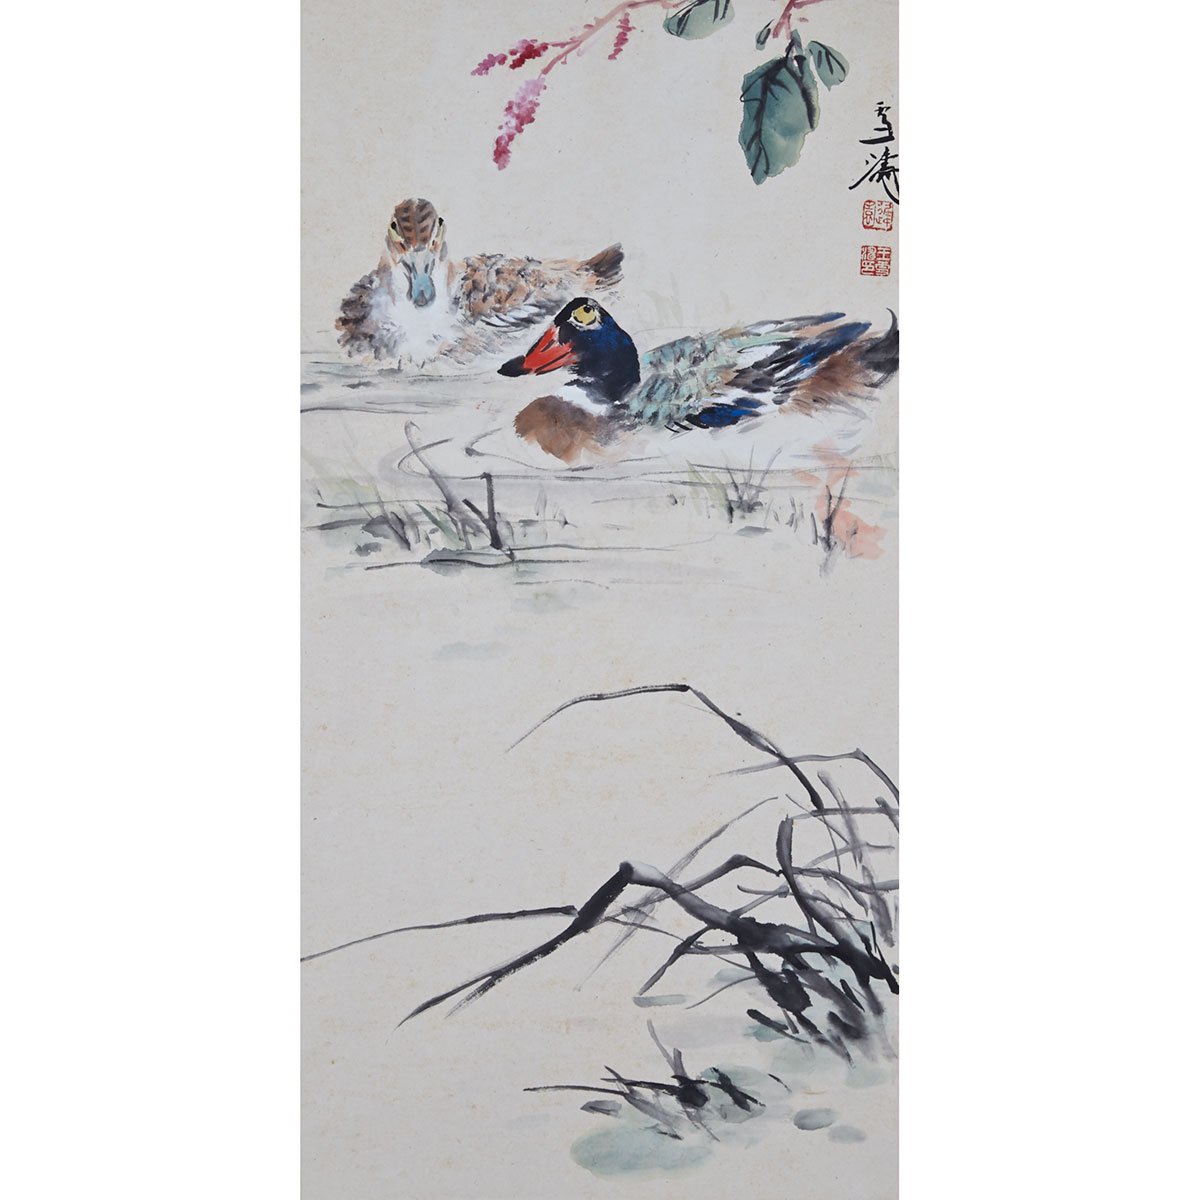 Attributed to Wang Xuetao (1903-1982)